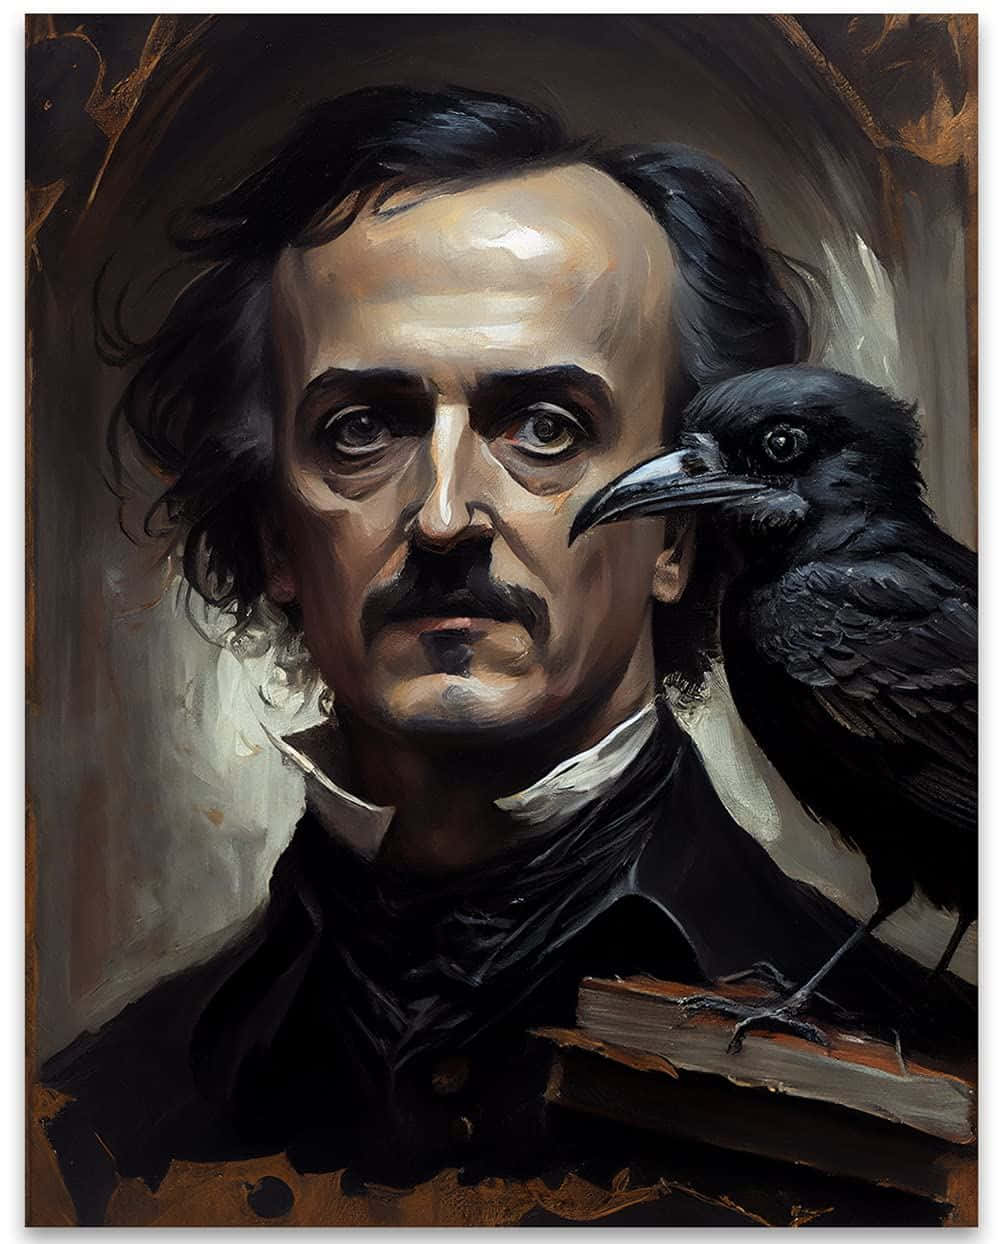 Edgar Allan Poeand Raven Background